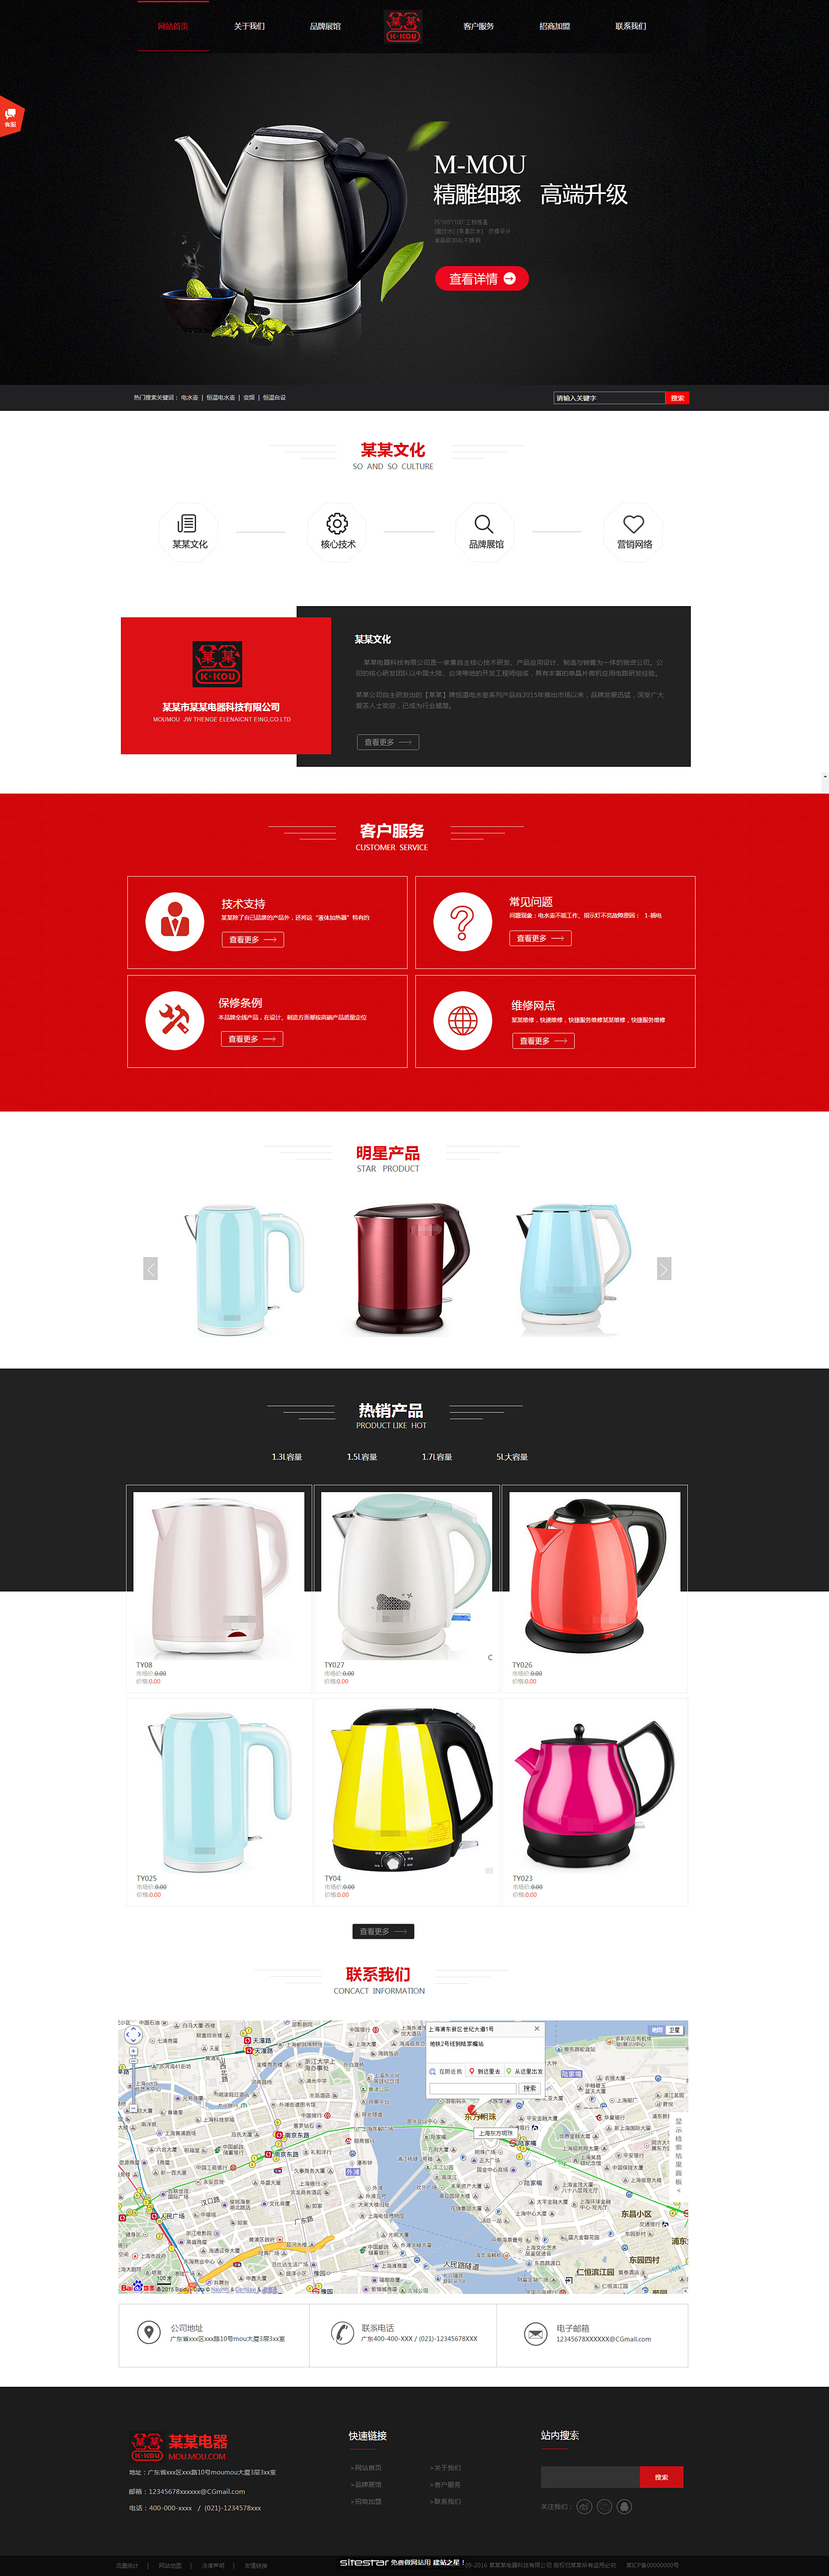 企业网站精美模板-appliances-300